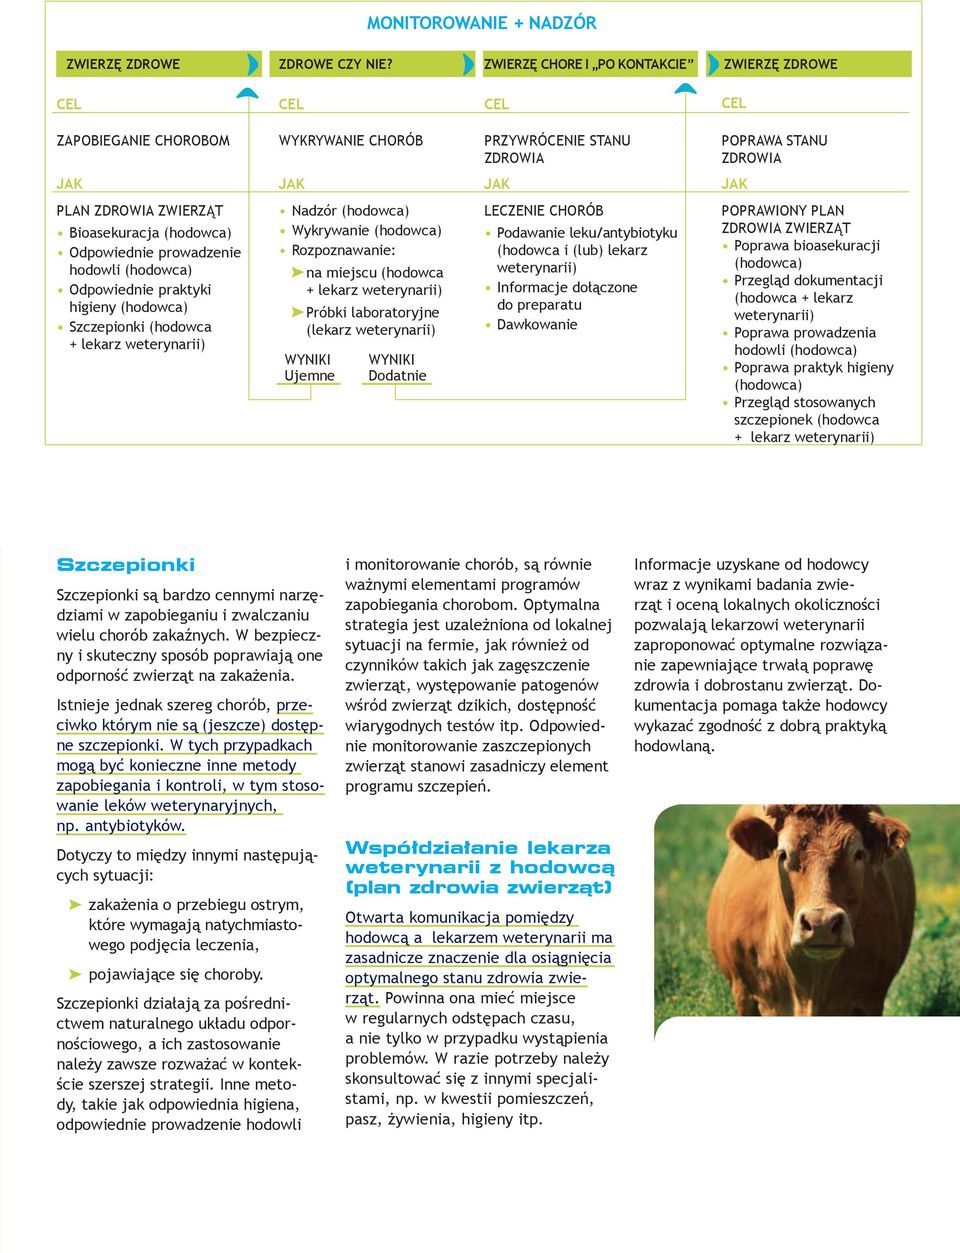 Odpowiednie prowadzenie hodowli (hodowca) Odpowiednie praktyki higieny (hodowca) Szczepionki (hodowca + lekarz weterynarii) Nadzór (hodowca) Wykrywanie (hodowca) Rozpoznawanie: na miejscu (hodowca +